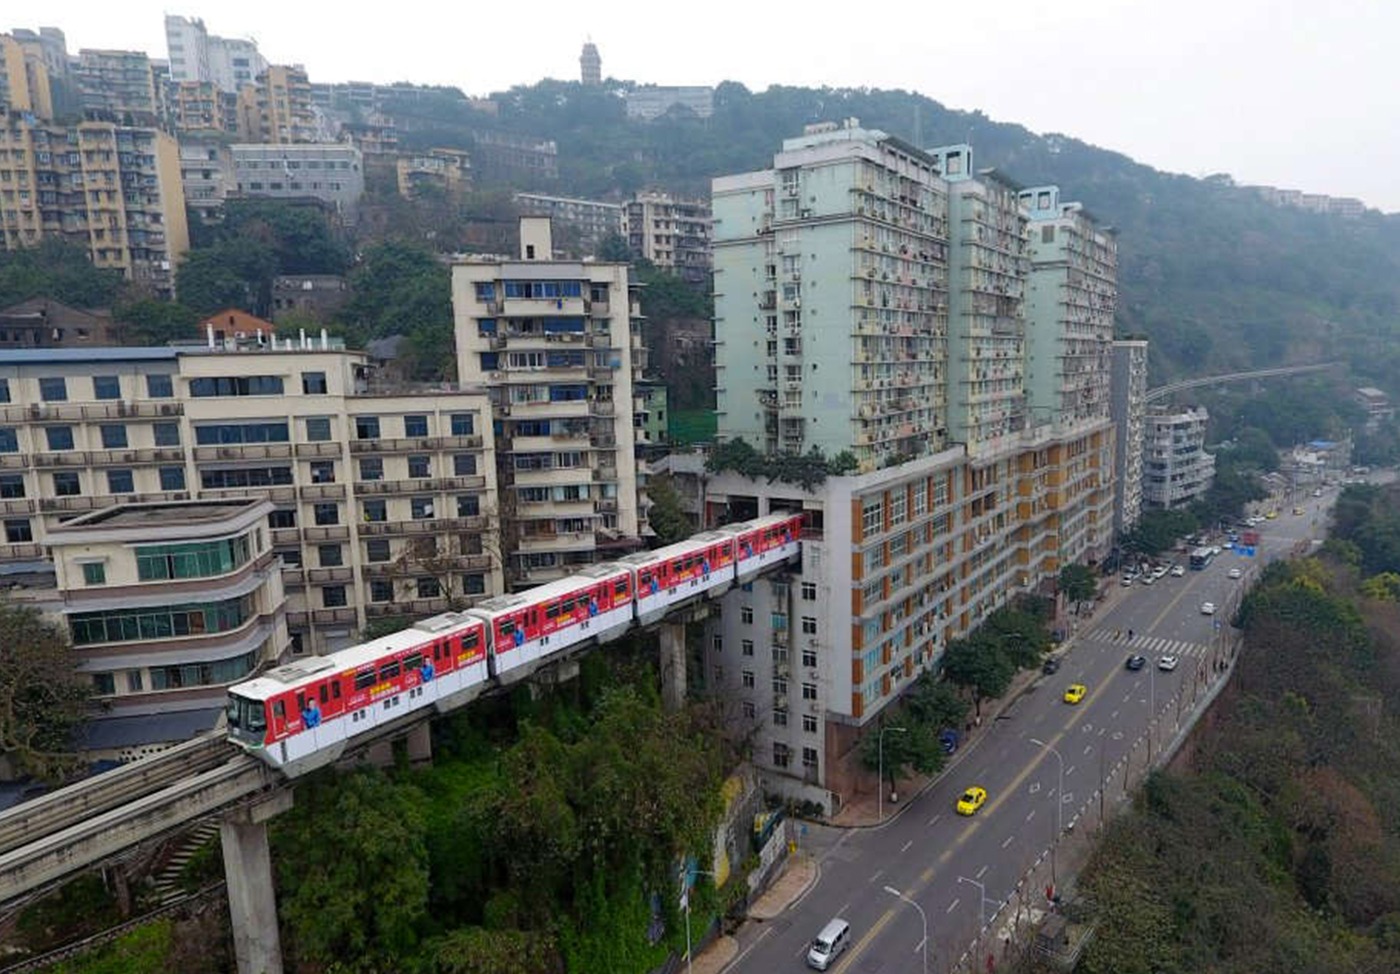 Hệ thống tàu điện đơn ray ở Trùng Khánh, Trung Quốc nổi tiếng với đoạn tuyến đi xuyên qua tòa nhà chung cư cao tầng trong trung tâm thành phố. (Ảnh: CNN)